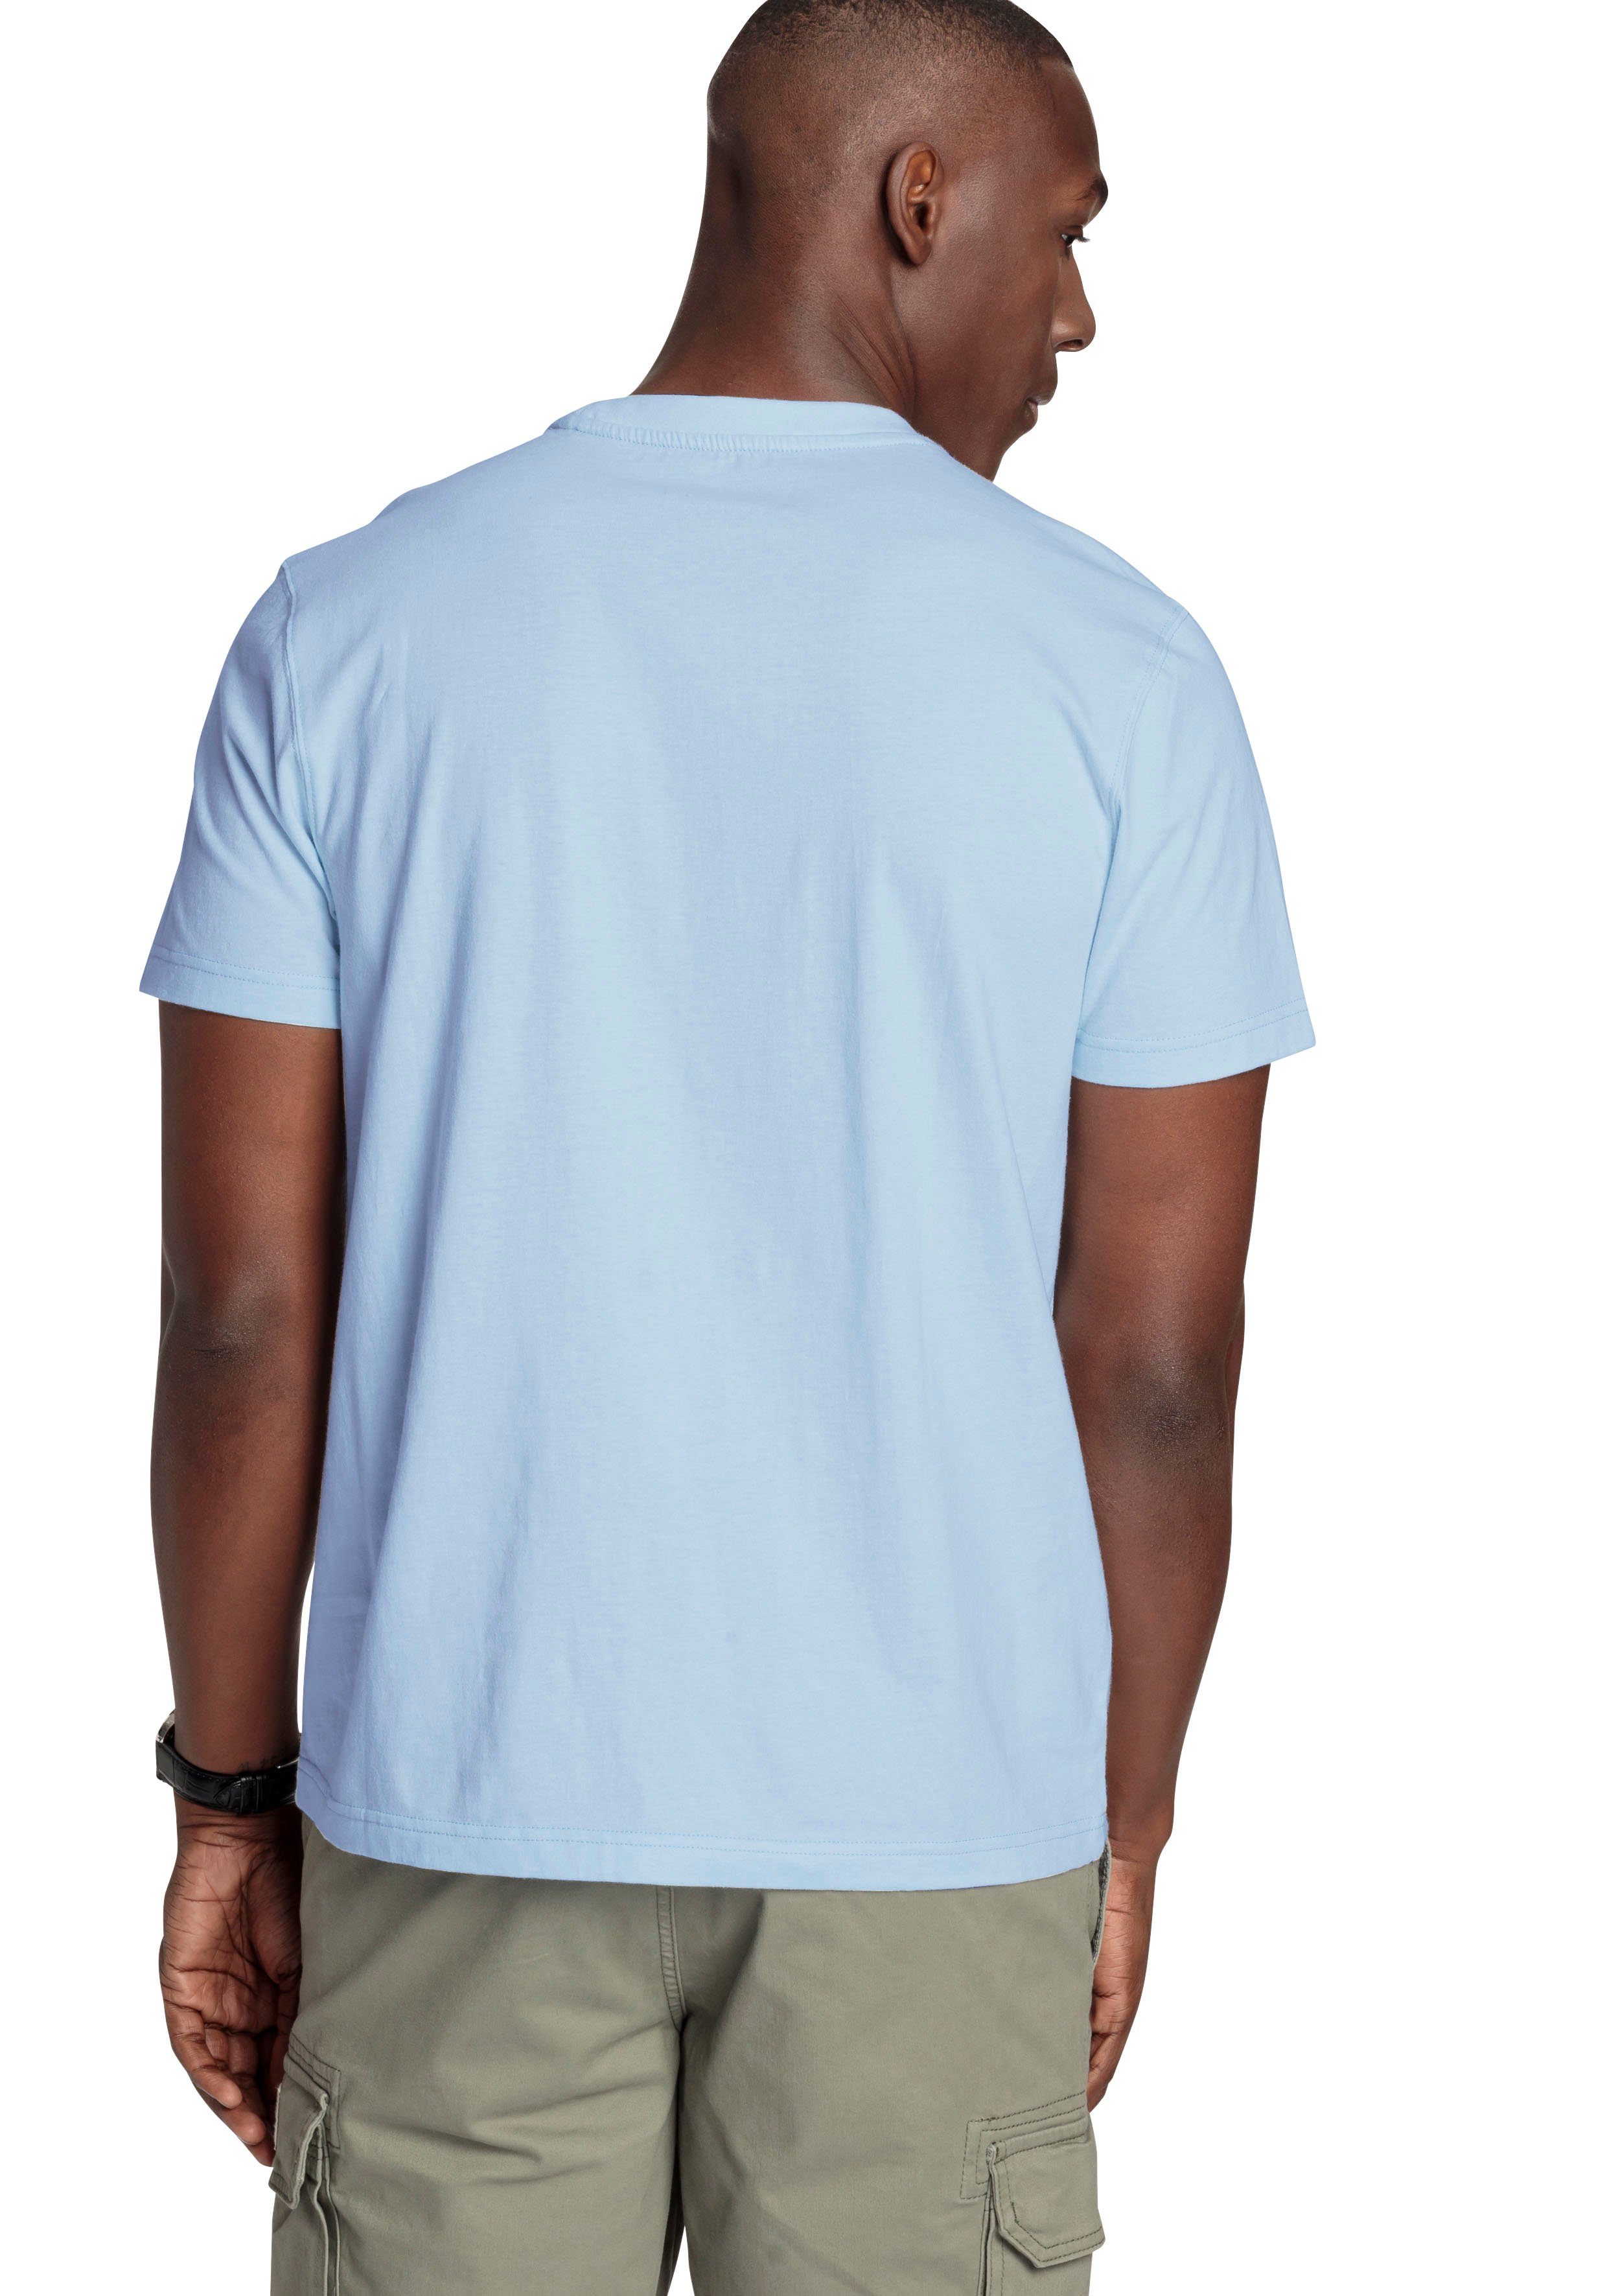 DELMAO - NEUE hellblau MARKE! mit modischem T-Shirt Brustprint